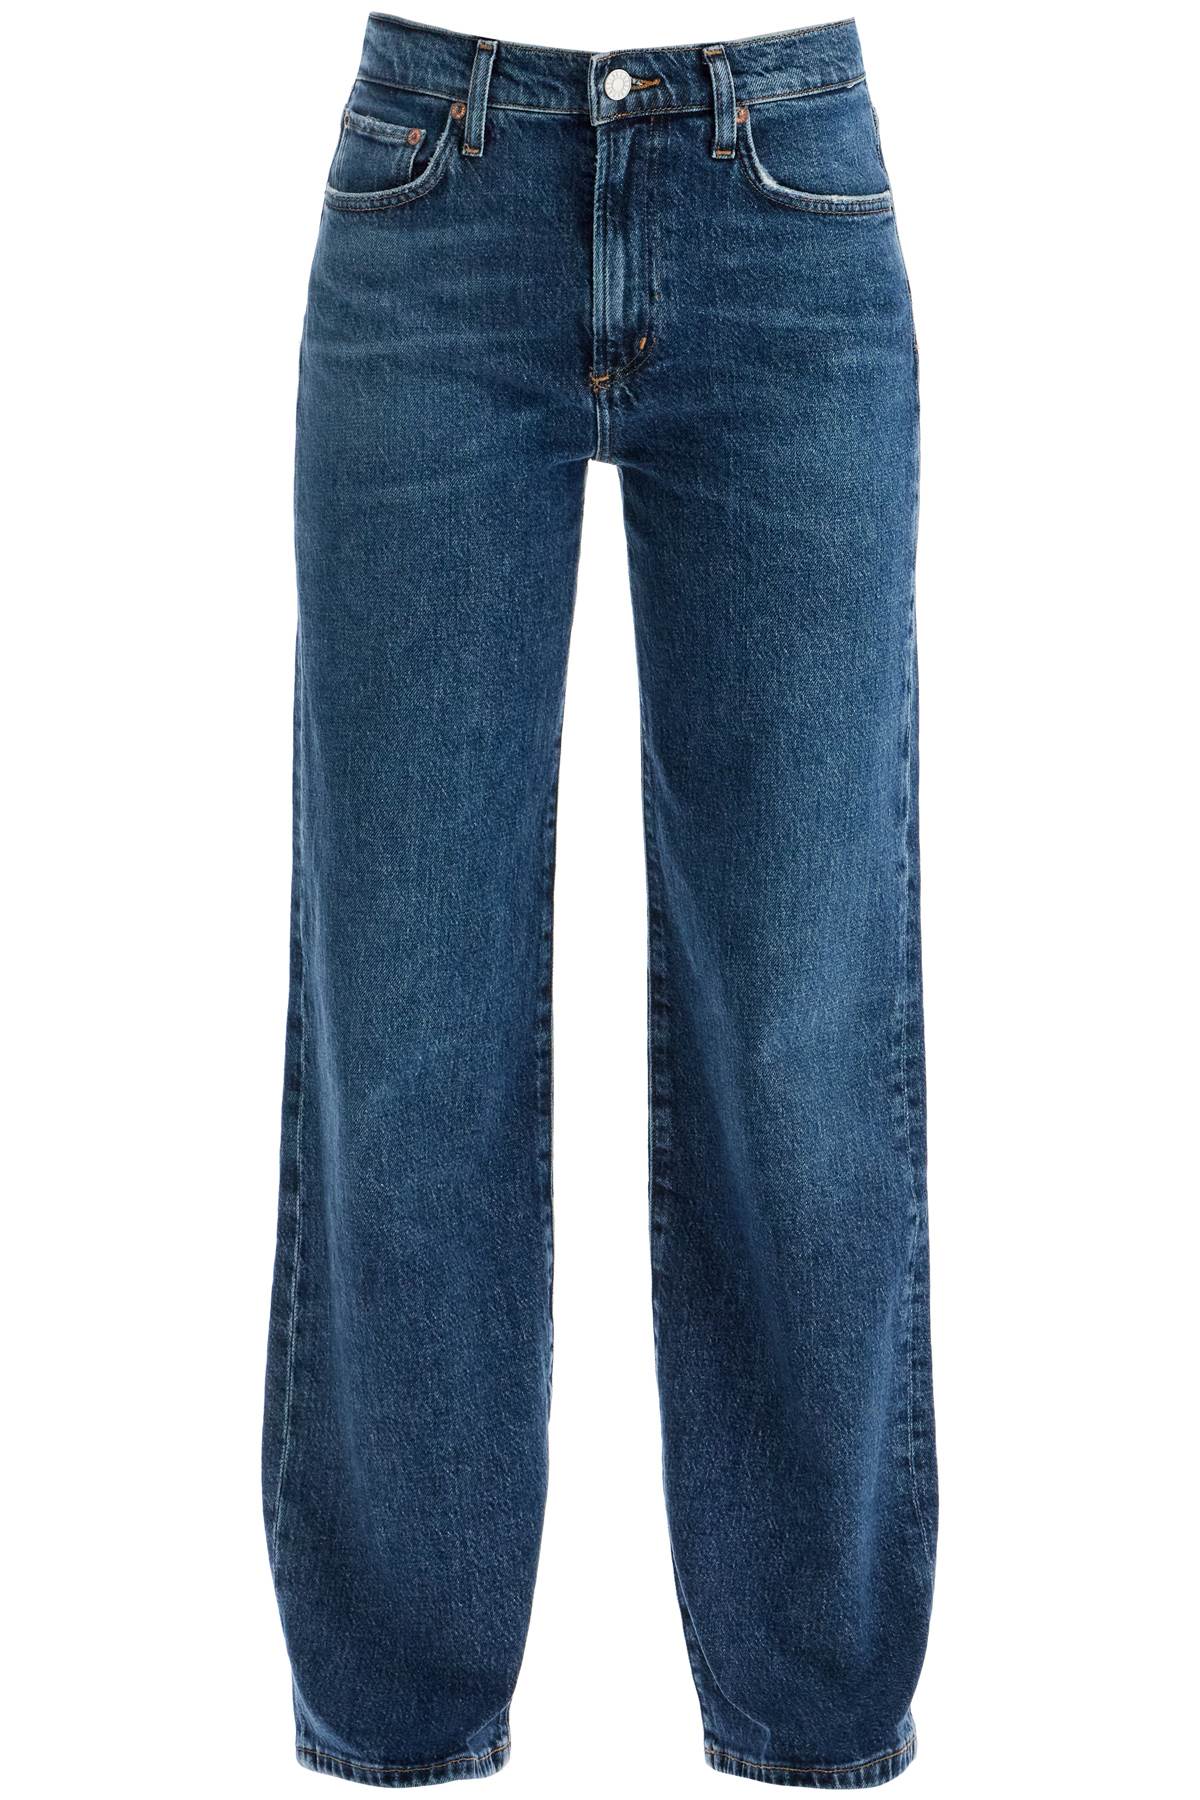 Straight Harper Jeans For Women